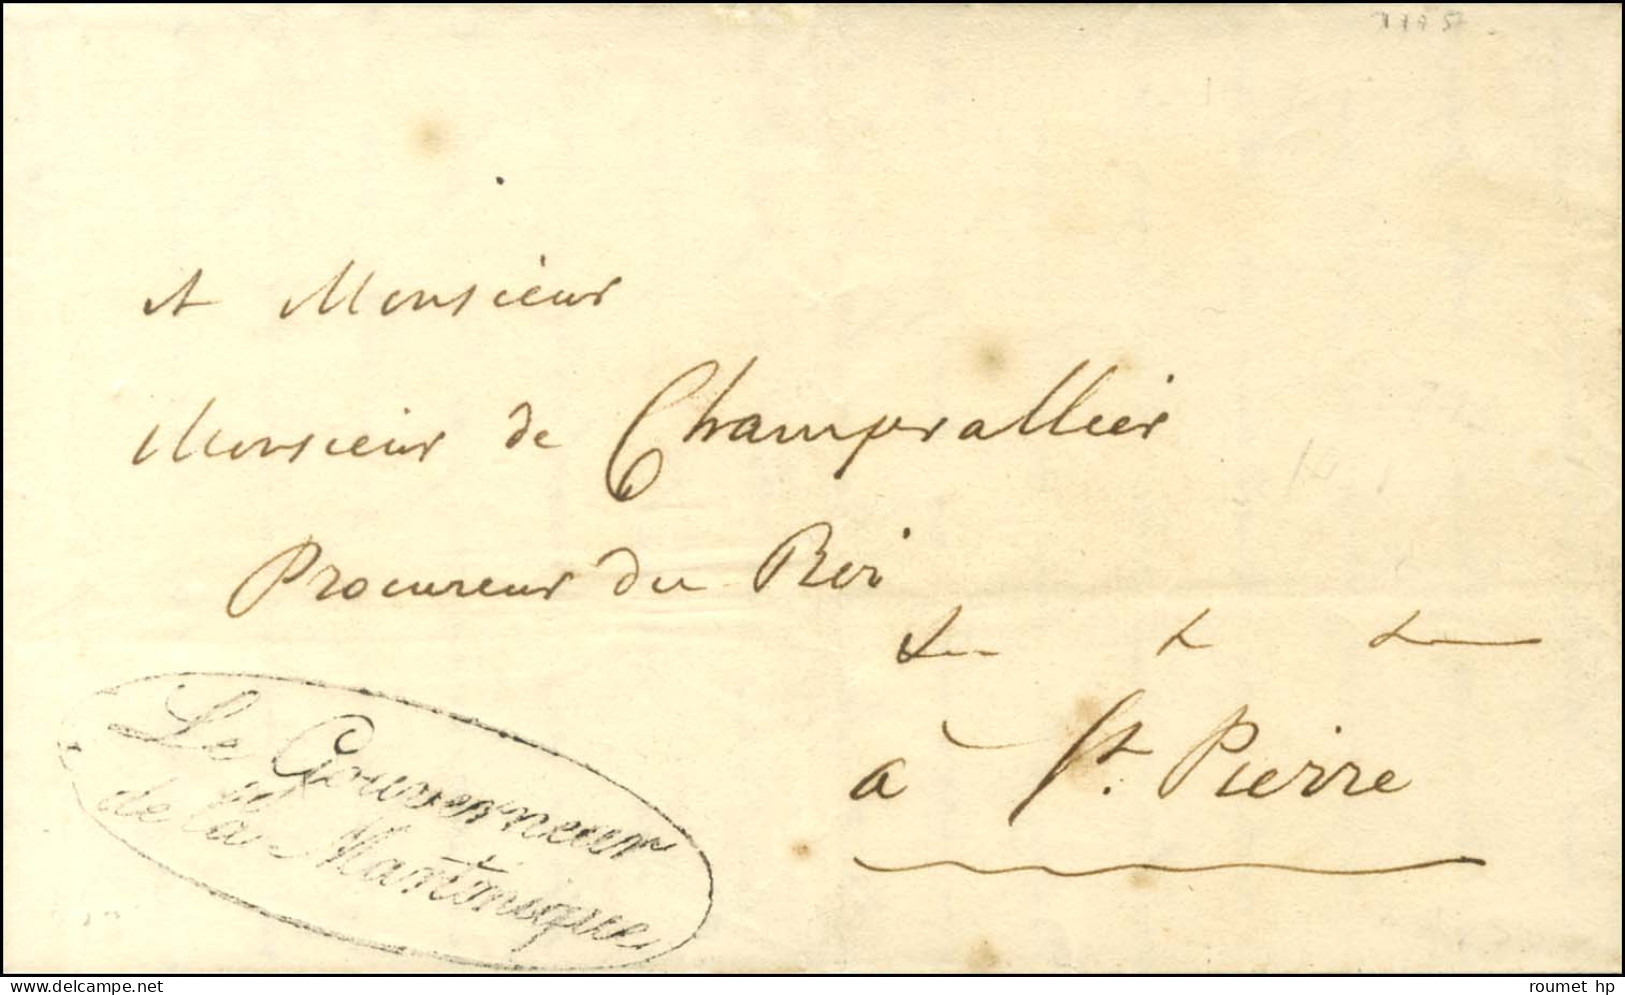 Lettre Avec Texte Daté De Fort Royal Le 22 Janvier 1828 Adressée En Franchise à St Pierre. Au Recto, Franchise LE GOUVER - Poste Maritime